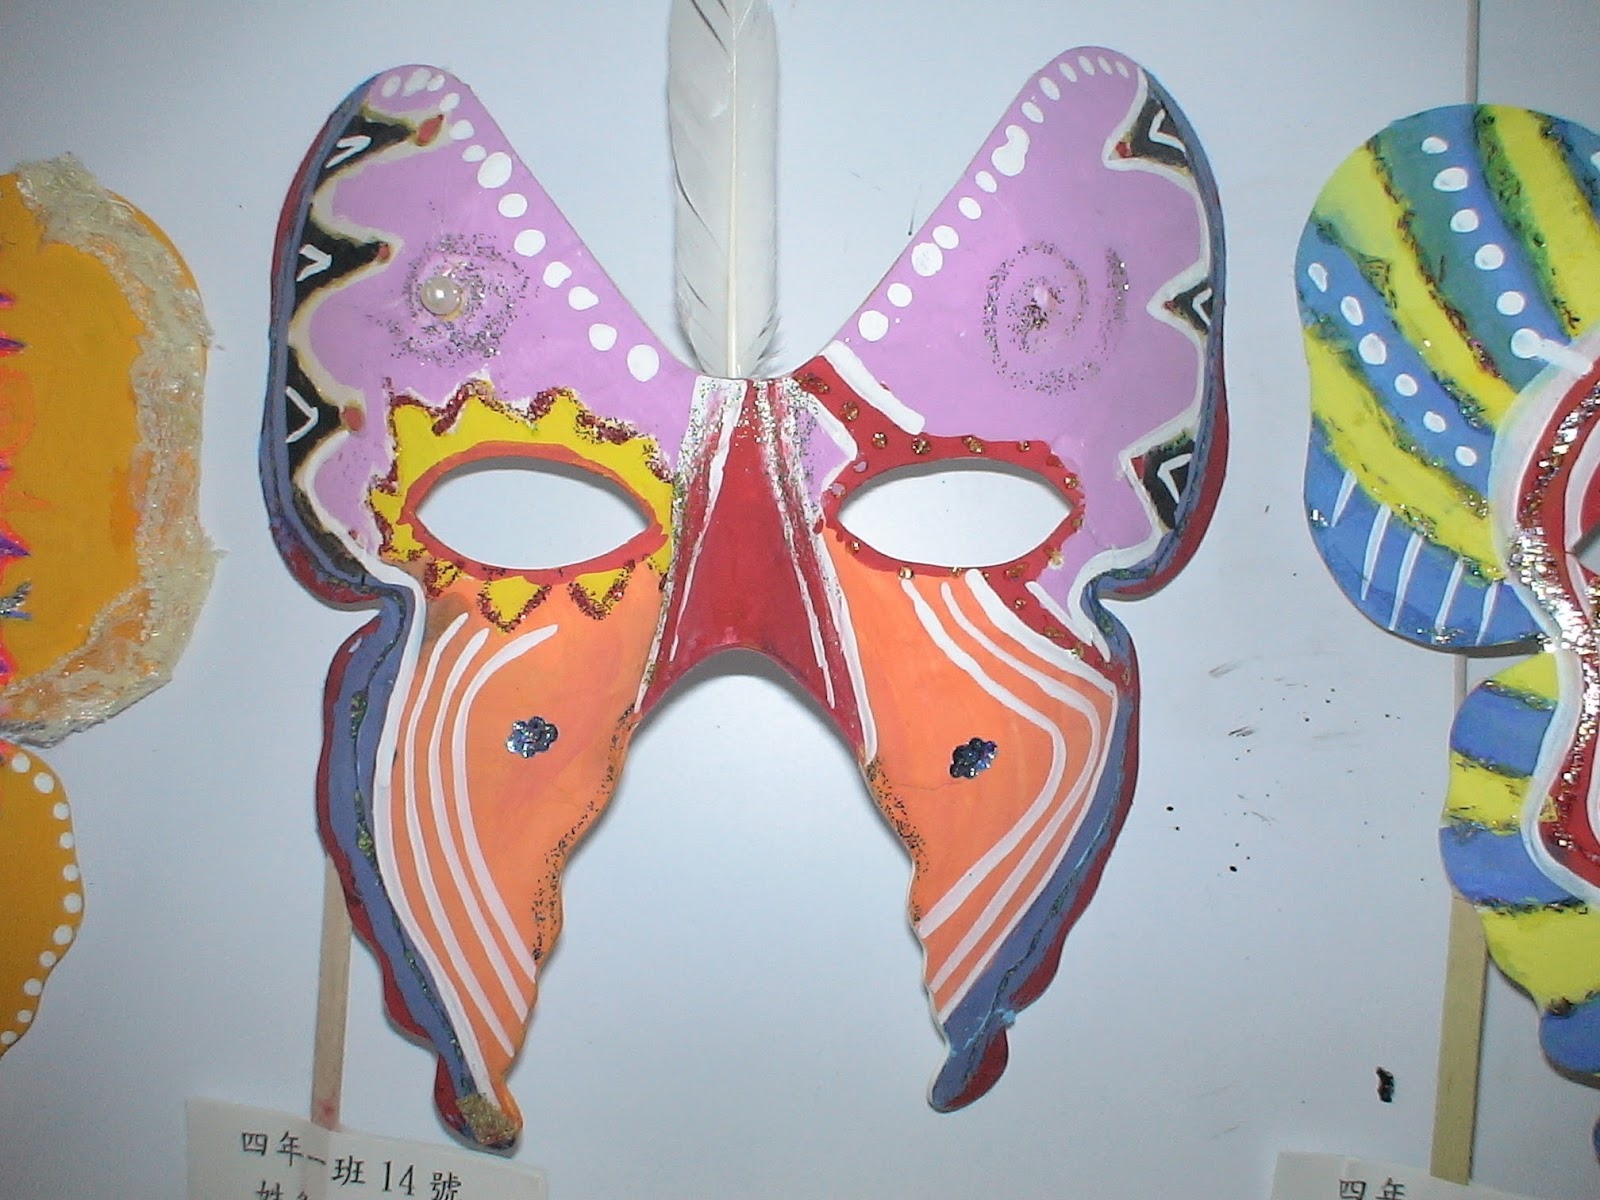 供应舞会面具批发 威尼斯面具 派对面具 塑料彩绘蝴蝶面具-阿里巴巴